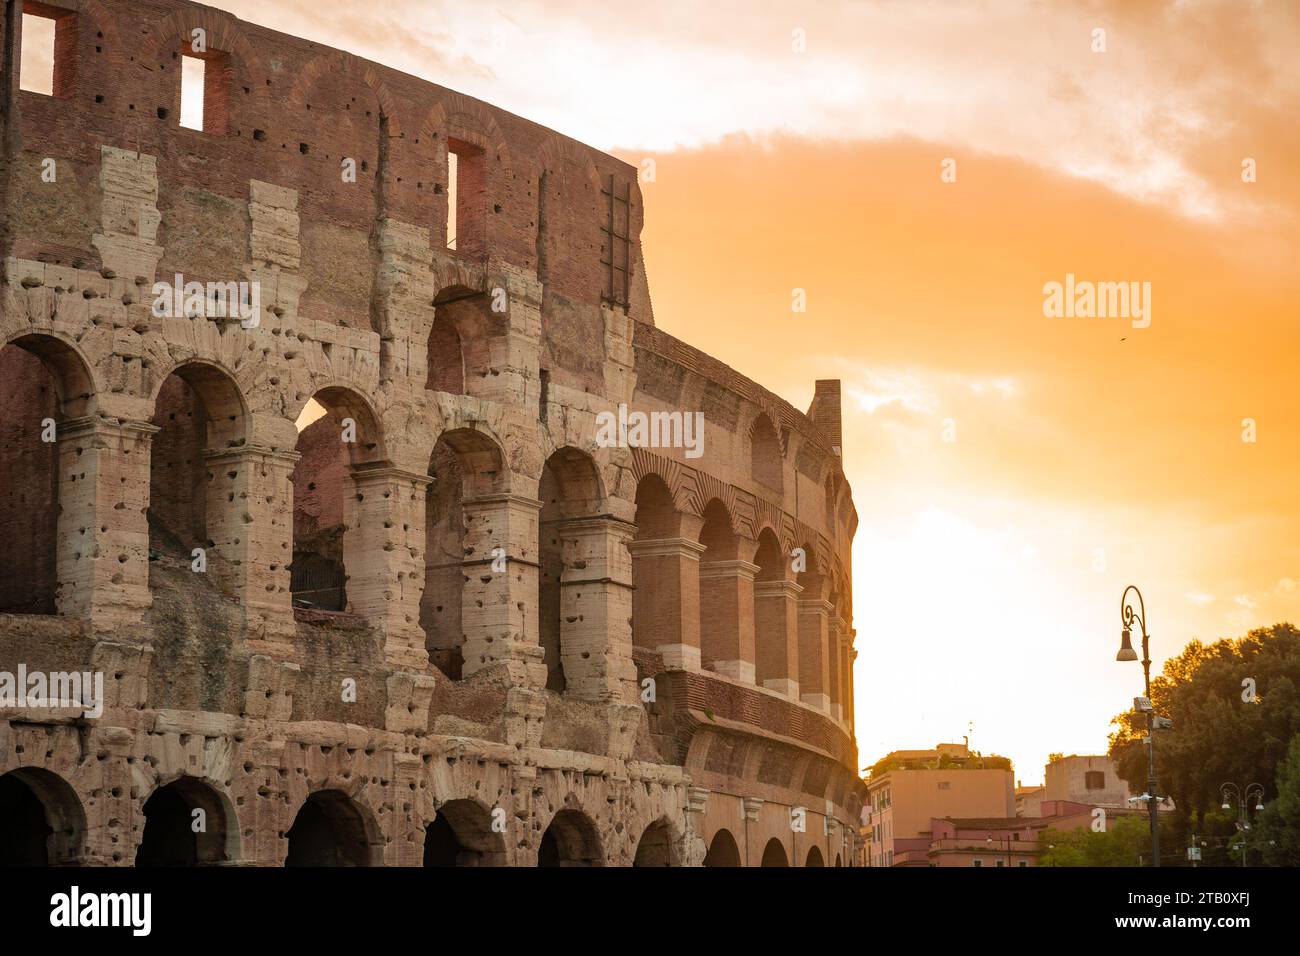 Vue matinale du colisée à Rome, ciel rouge et bleu avec soleil sur le point de se lever au-dessus du grand amphithéâtre célèbre. Réglage d'automne. Banque D'Images